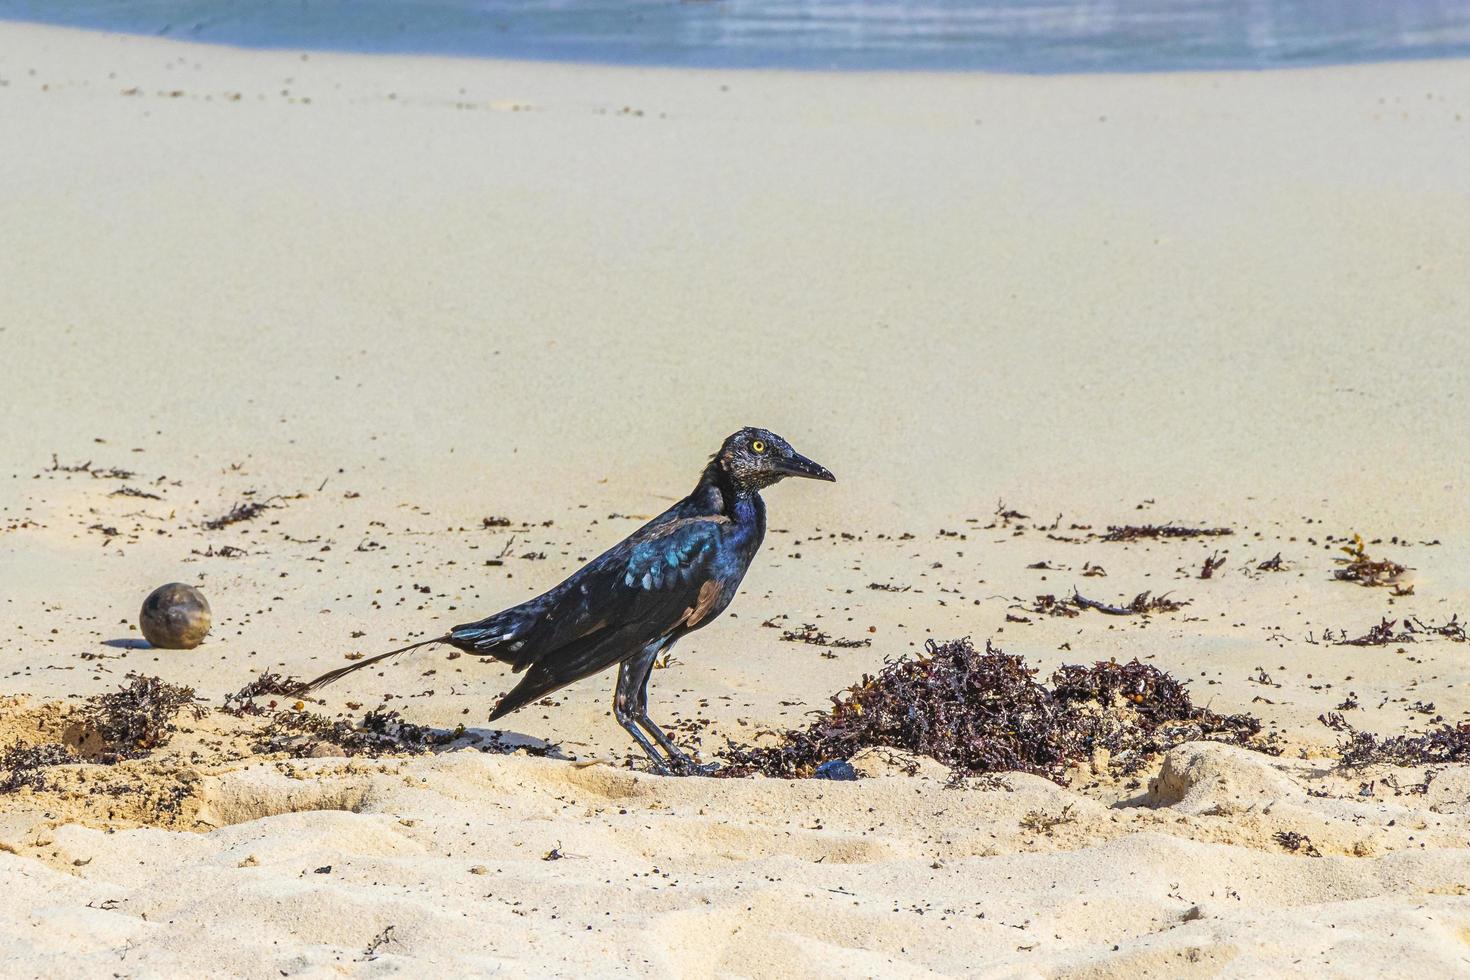 grackle-vogel met grote staart eet sargazo op strand mexico. foto